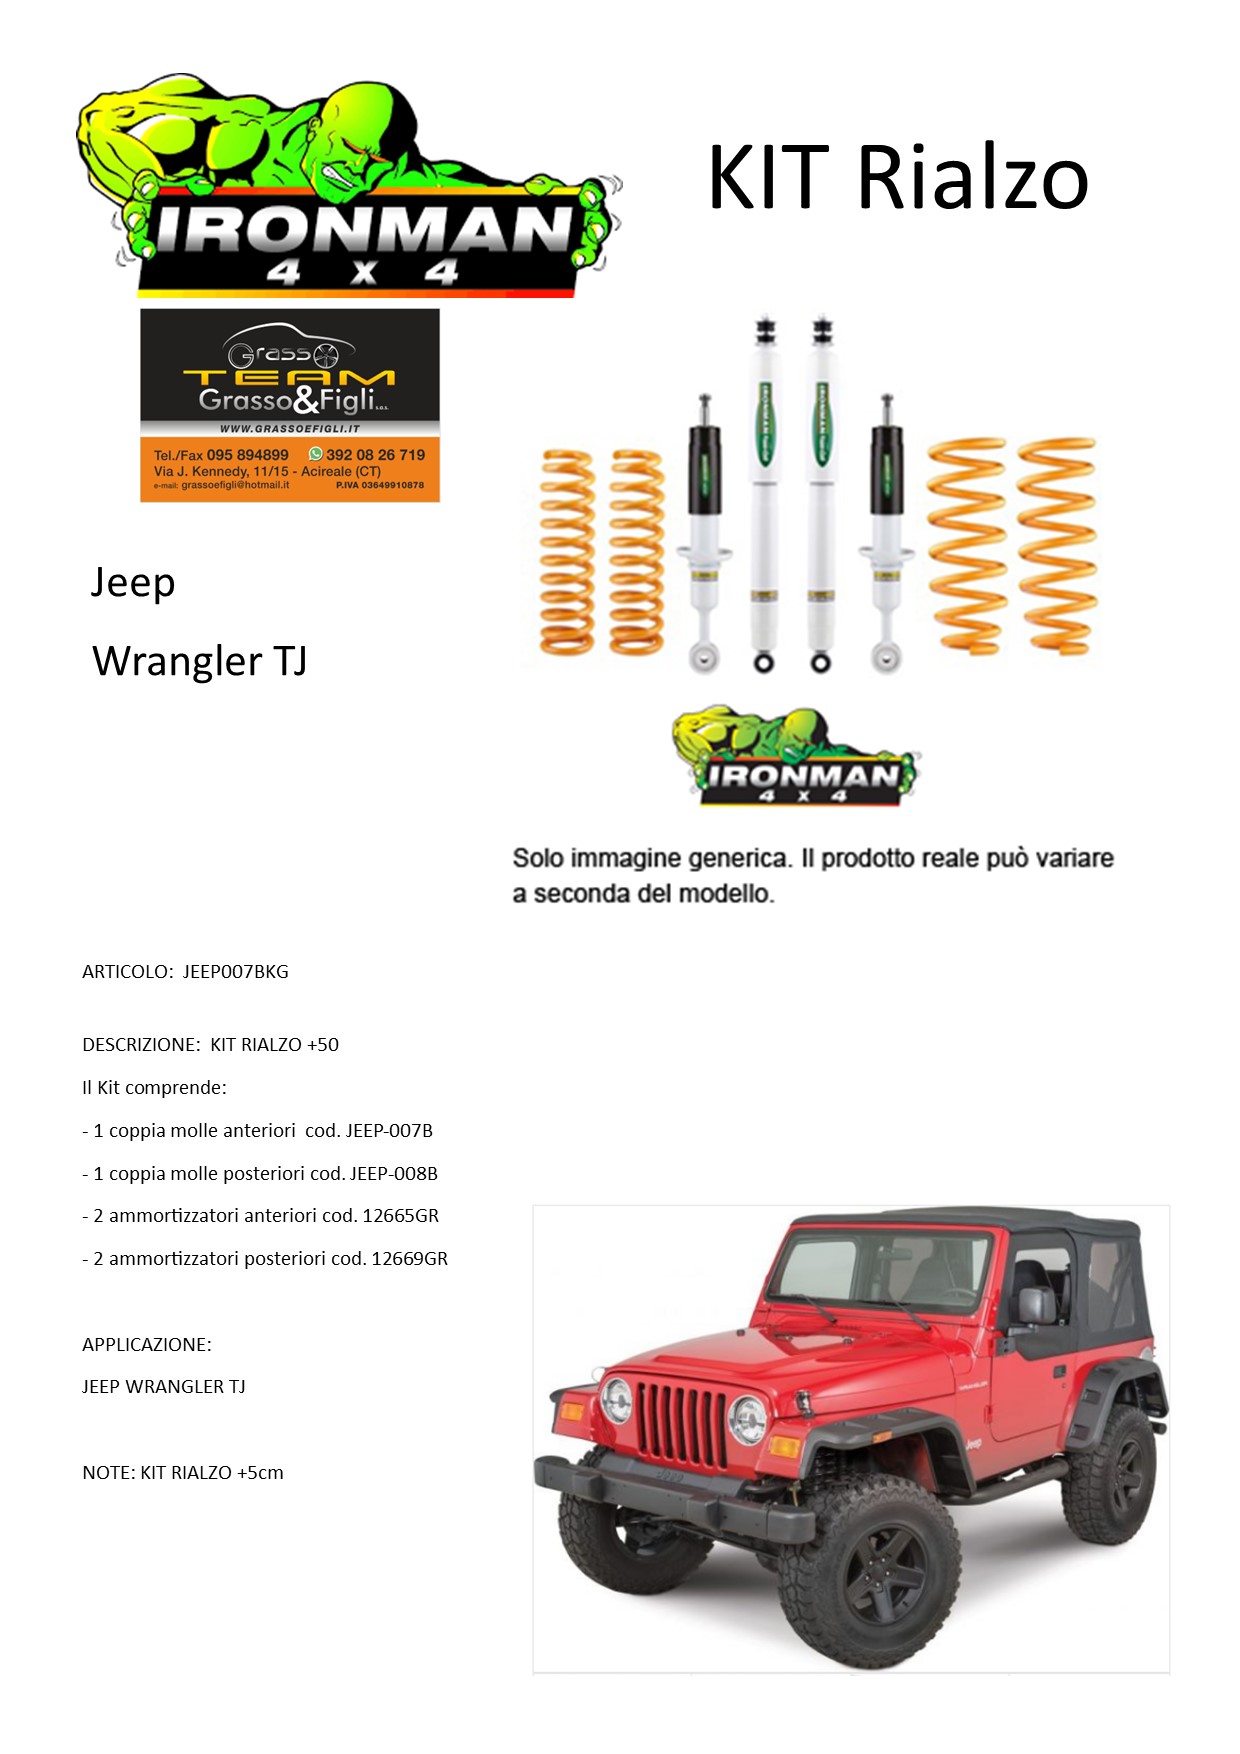 Kit rialzo off road for Jeep Wrangler TJ + 5 cm IRONMAN 4x4 ammortizzatori  e Molle - Grasso e Figli snc